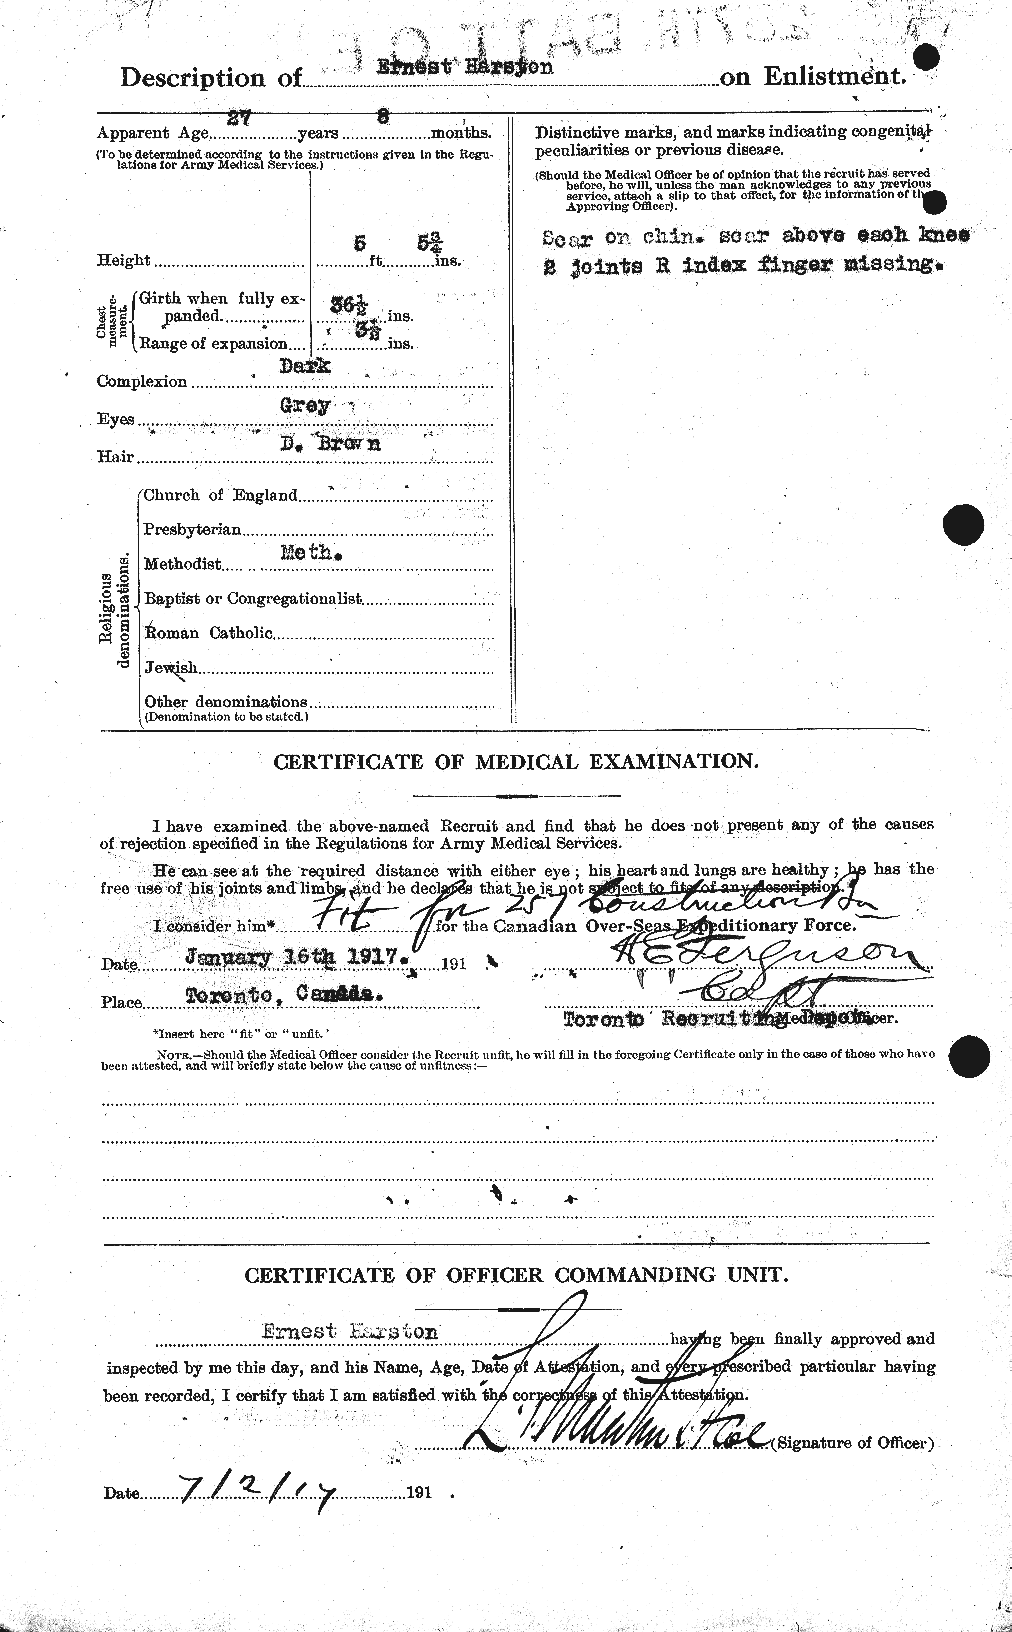 Dossiers du Personnel de la Première Guerre mondiale - CEC 381783b